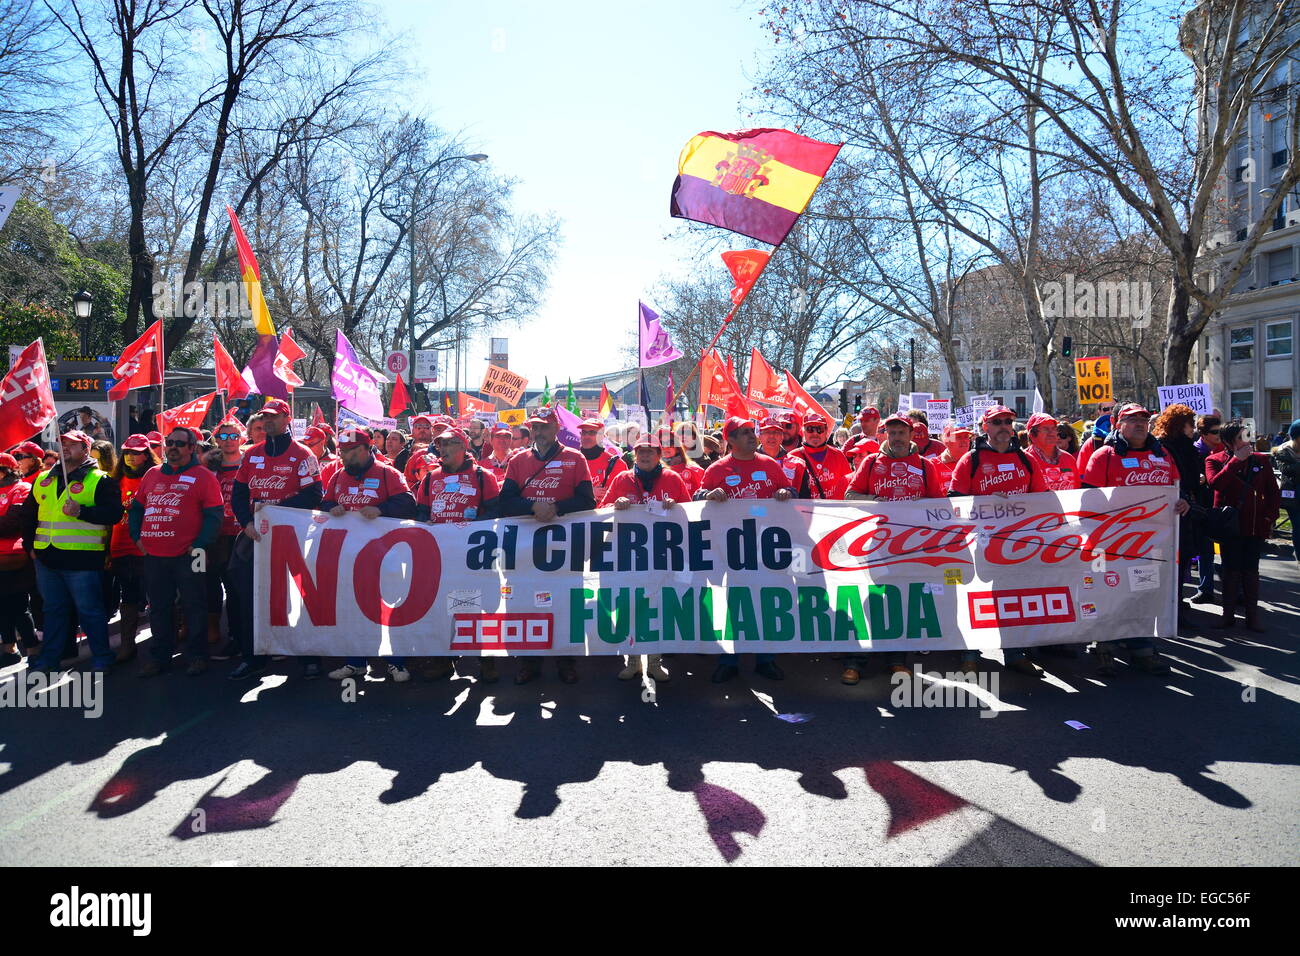 Coca Cola lavoratori protesta contro la chiusura di un impianto a Fuenlabrada, nel corso di una manifestazione a Madrid. 22nd, febbraio 2015. Spagna. Credito: Marcos del Mazo/Alamy Live News Foto Stock